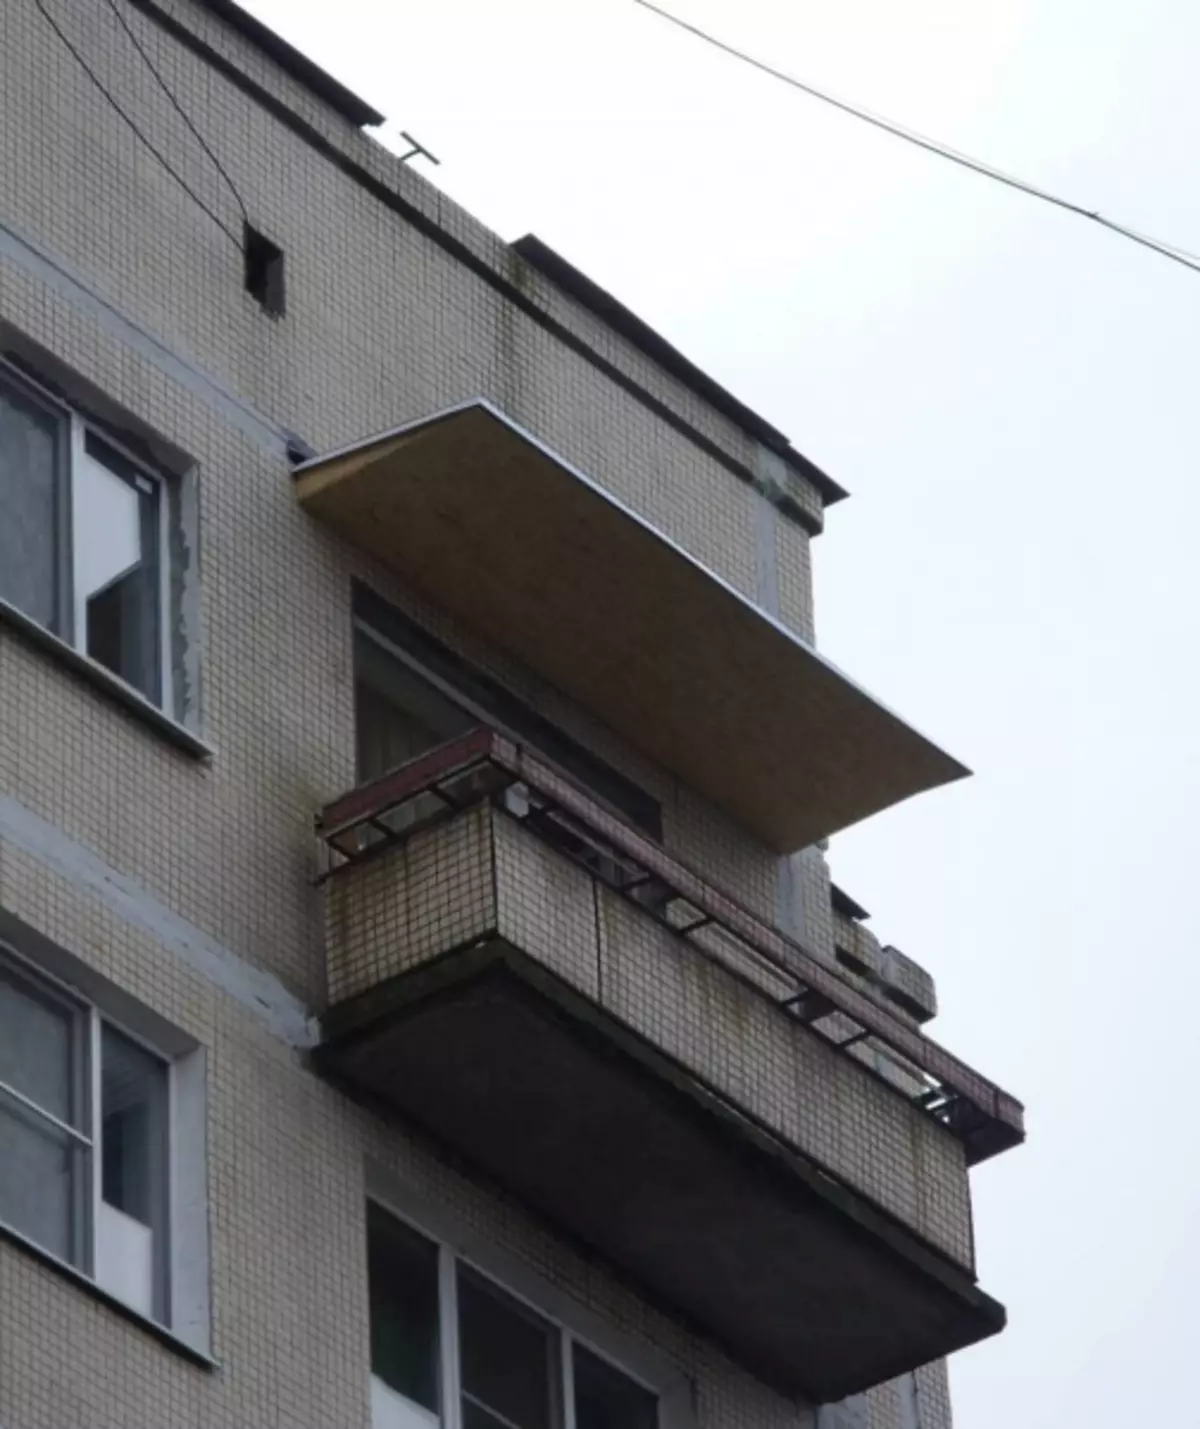 Ak balkón prúdi zhora - čo robiť a komu kontaktovať